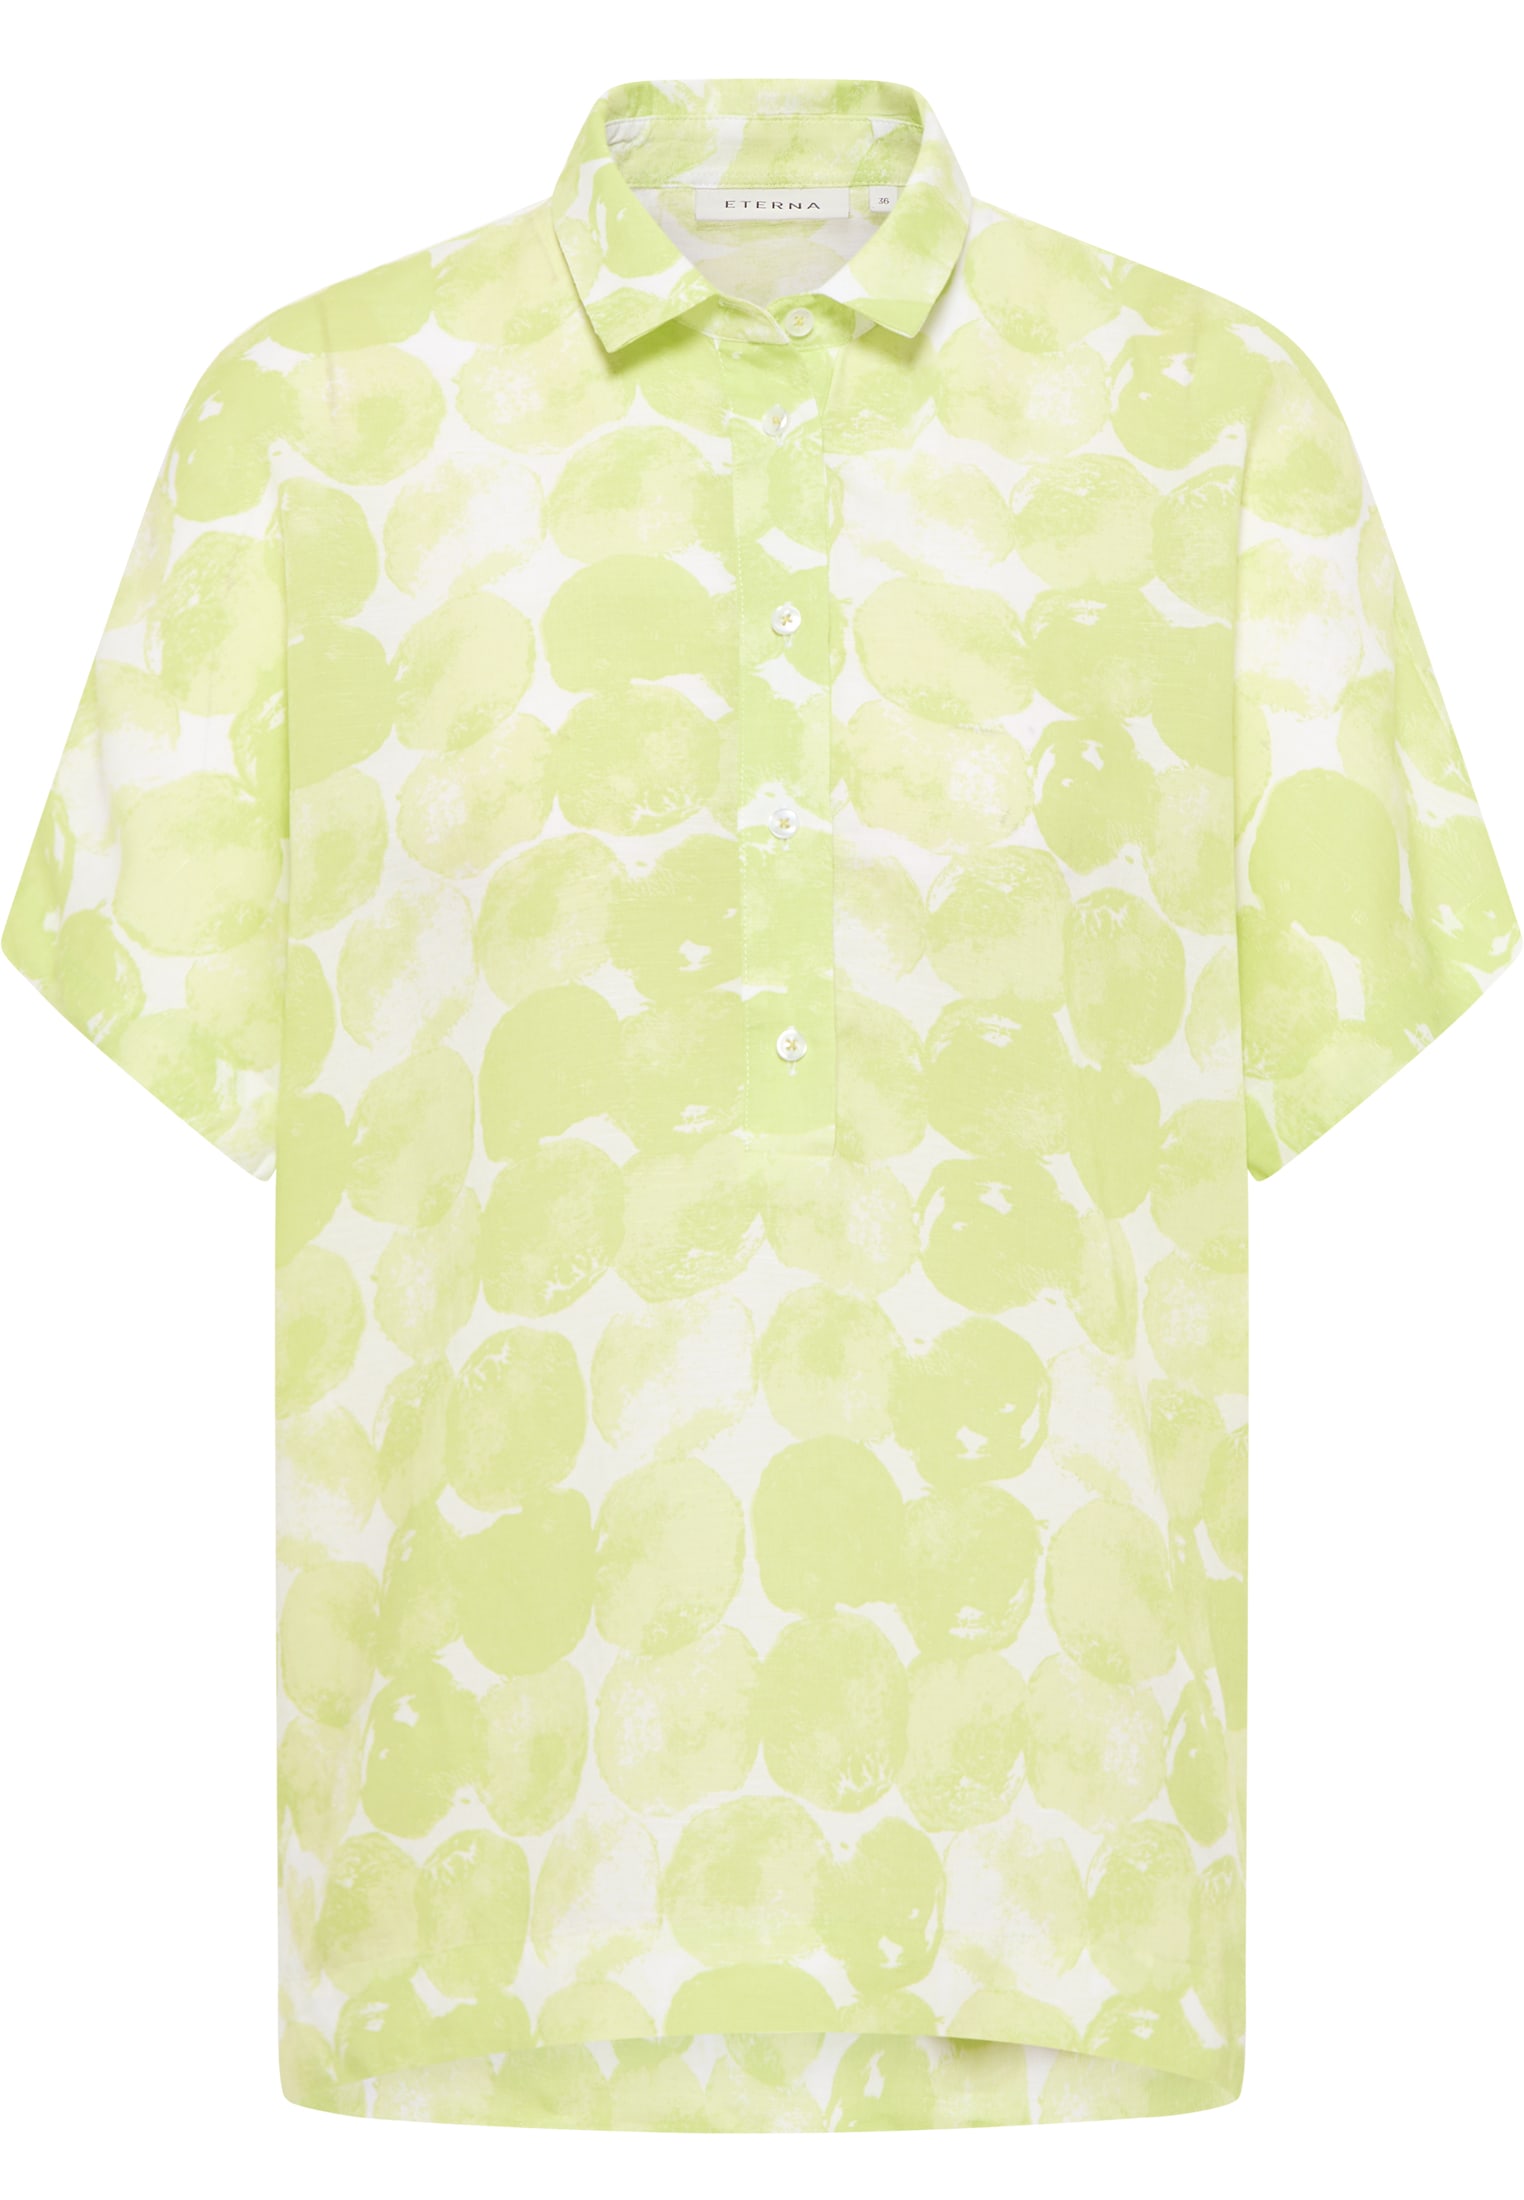 T-shirt blouse in acid lemon printed